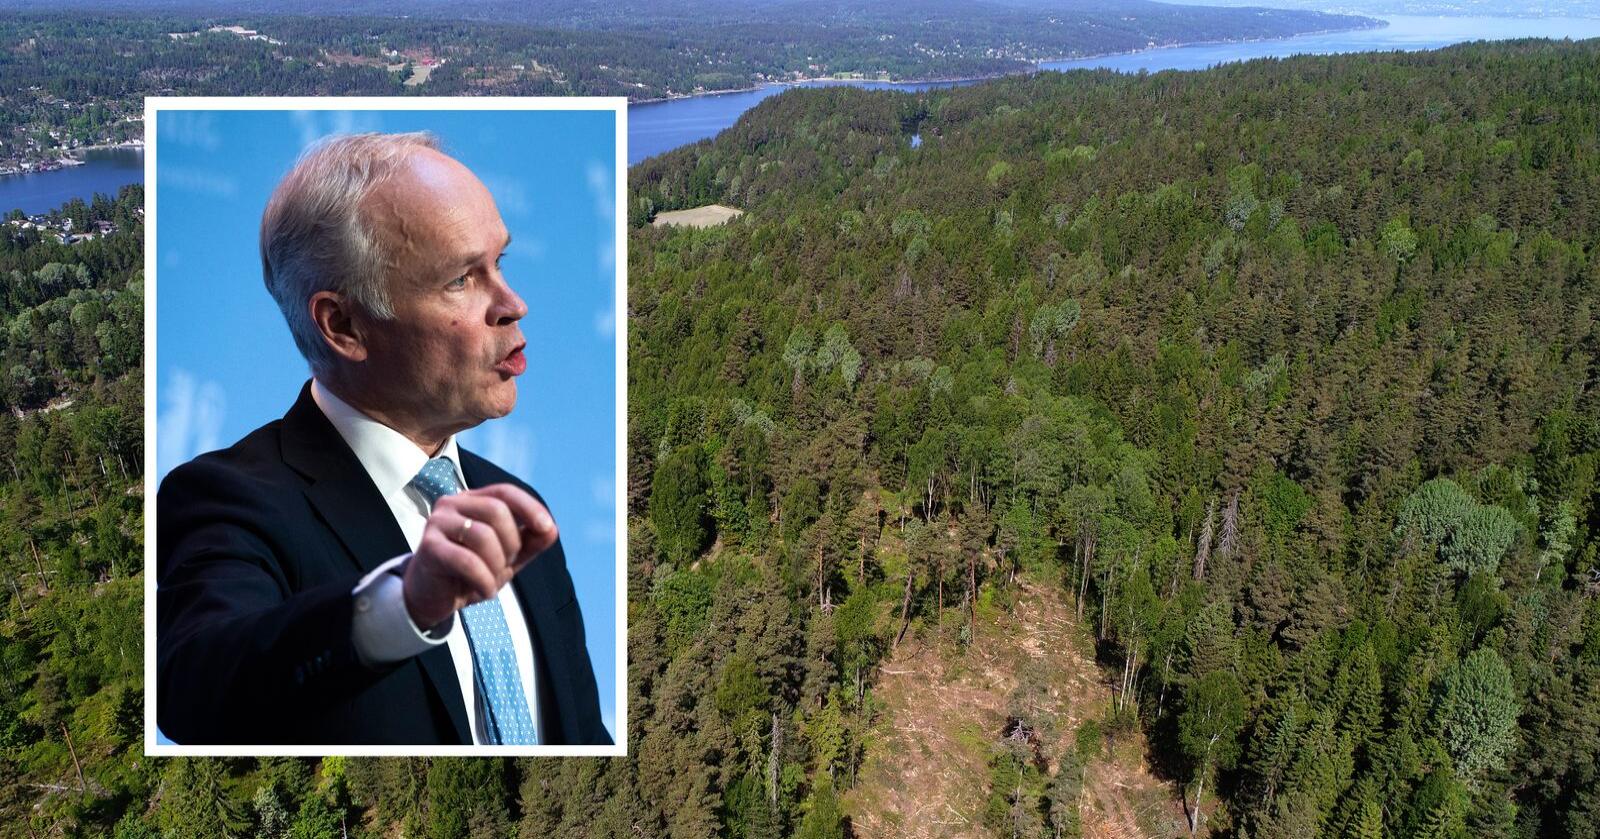 Jan Tore Sanner sier norske myndigheter ønsker at skogbruket skal klassifiseres som bærekraftig etter eksisterende kriterier. Foto: Cornelius Poppe og Berit Roald / NTB